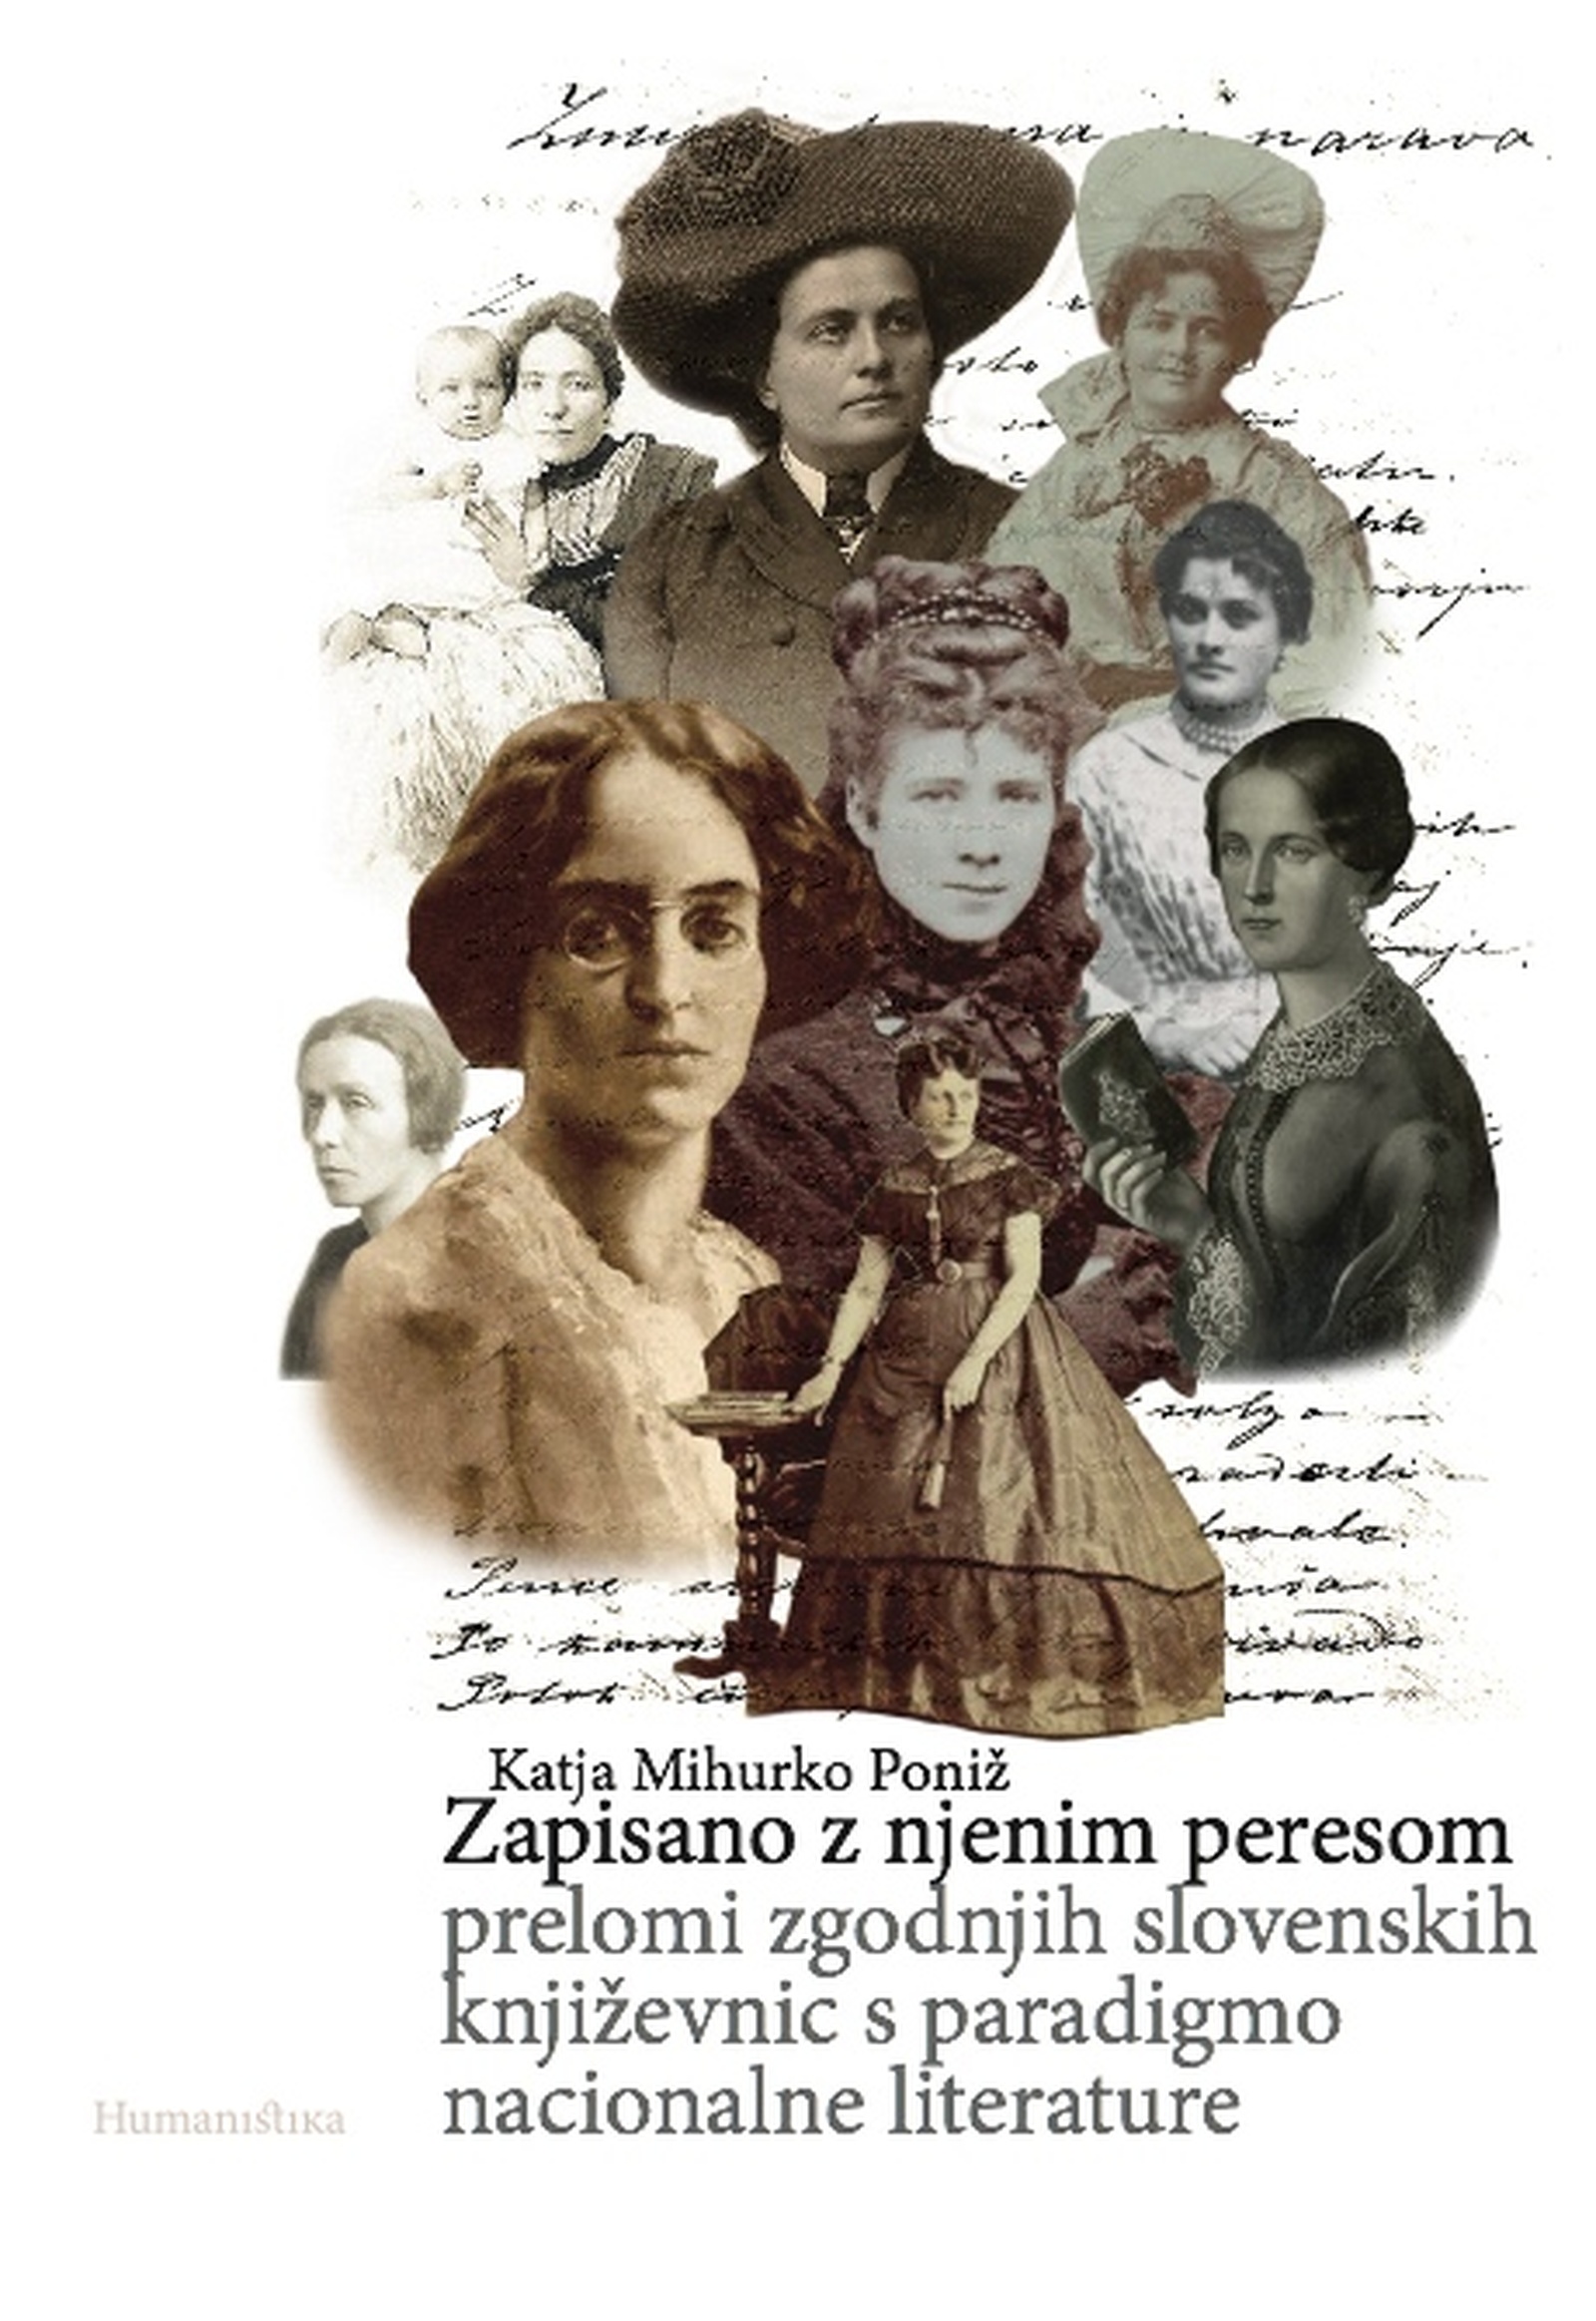 Predstavitev knjige Zapisano z njenim peresom: prelomi zgodnjih slovenskih književnic s paradigmo nacionalne literature